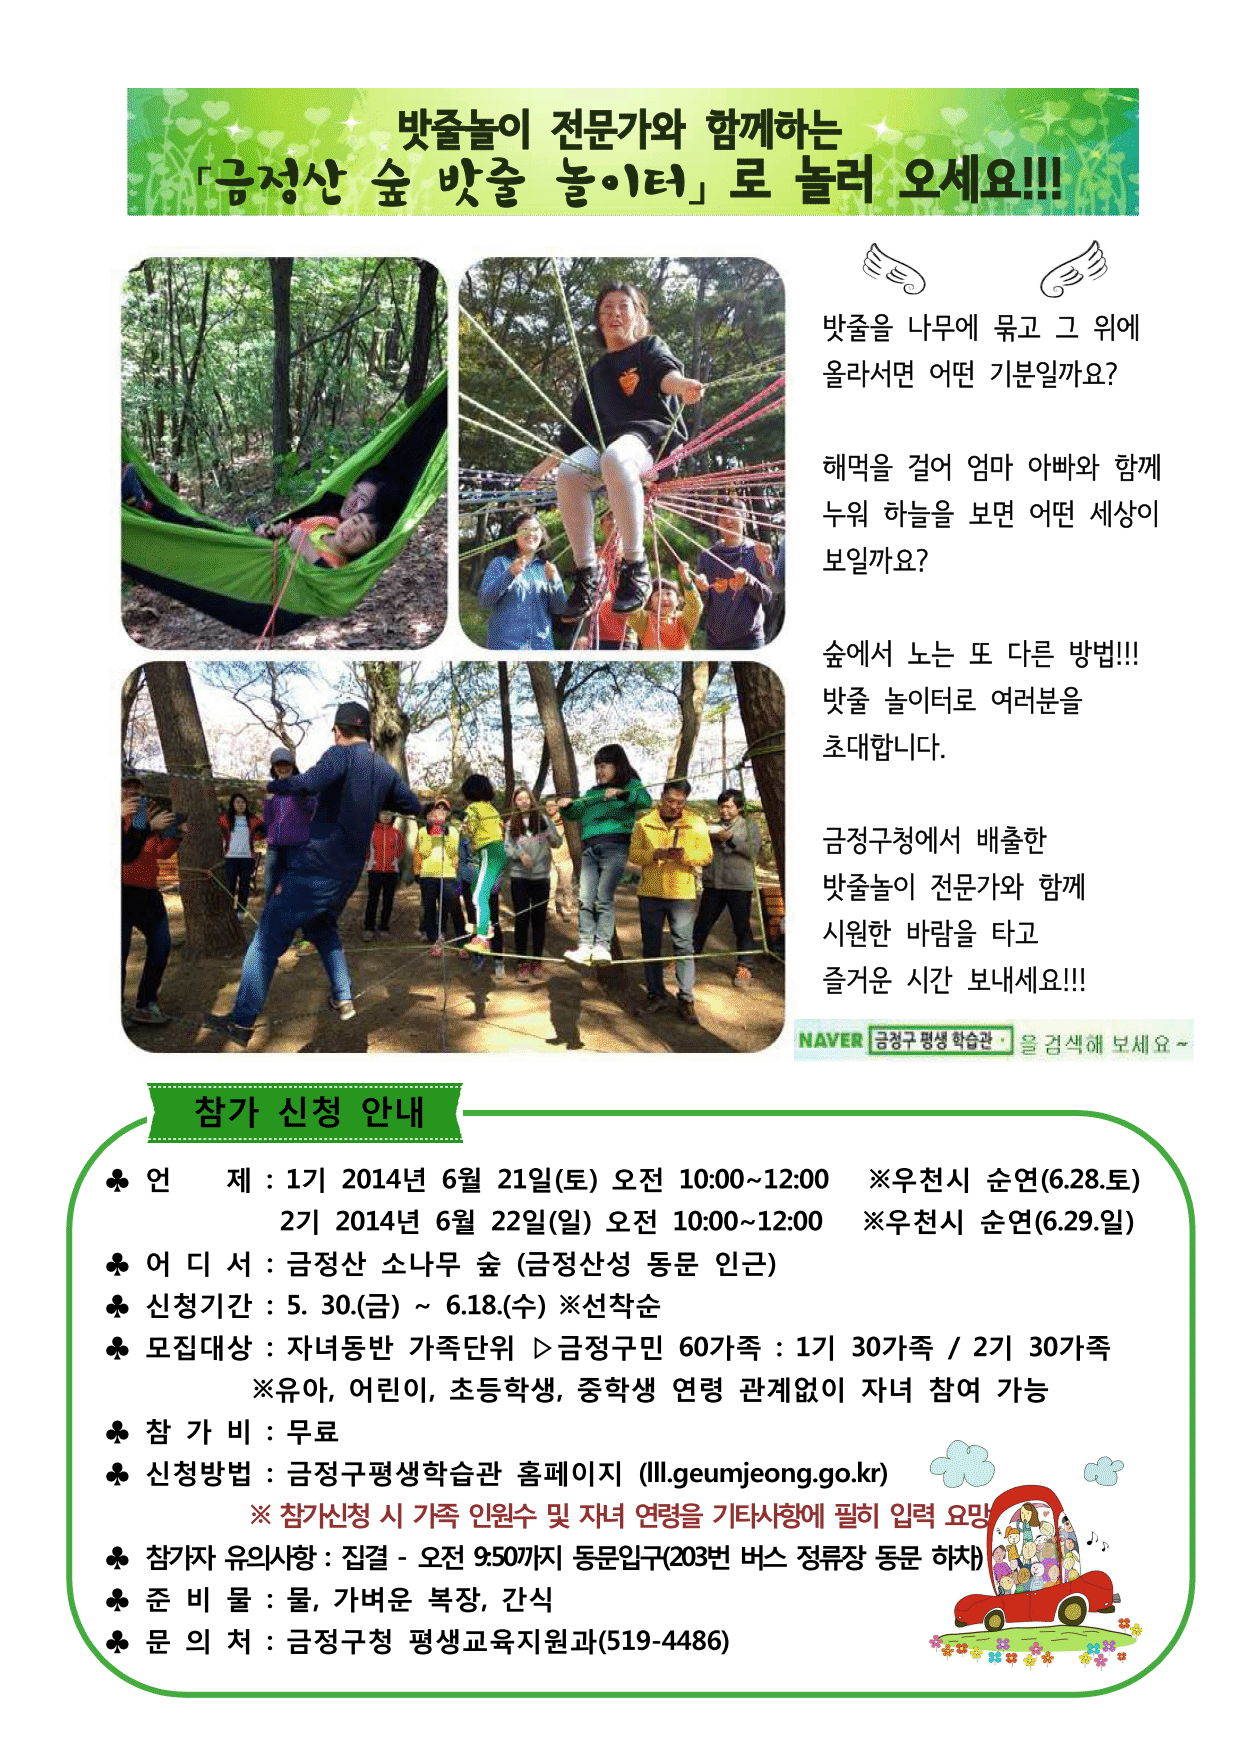 「금정산 숲 밧줄 놀이터」가족체험교실 안내 (6월)